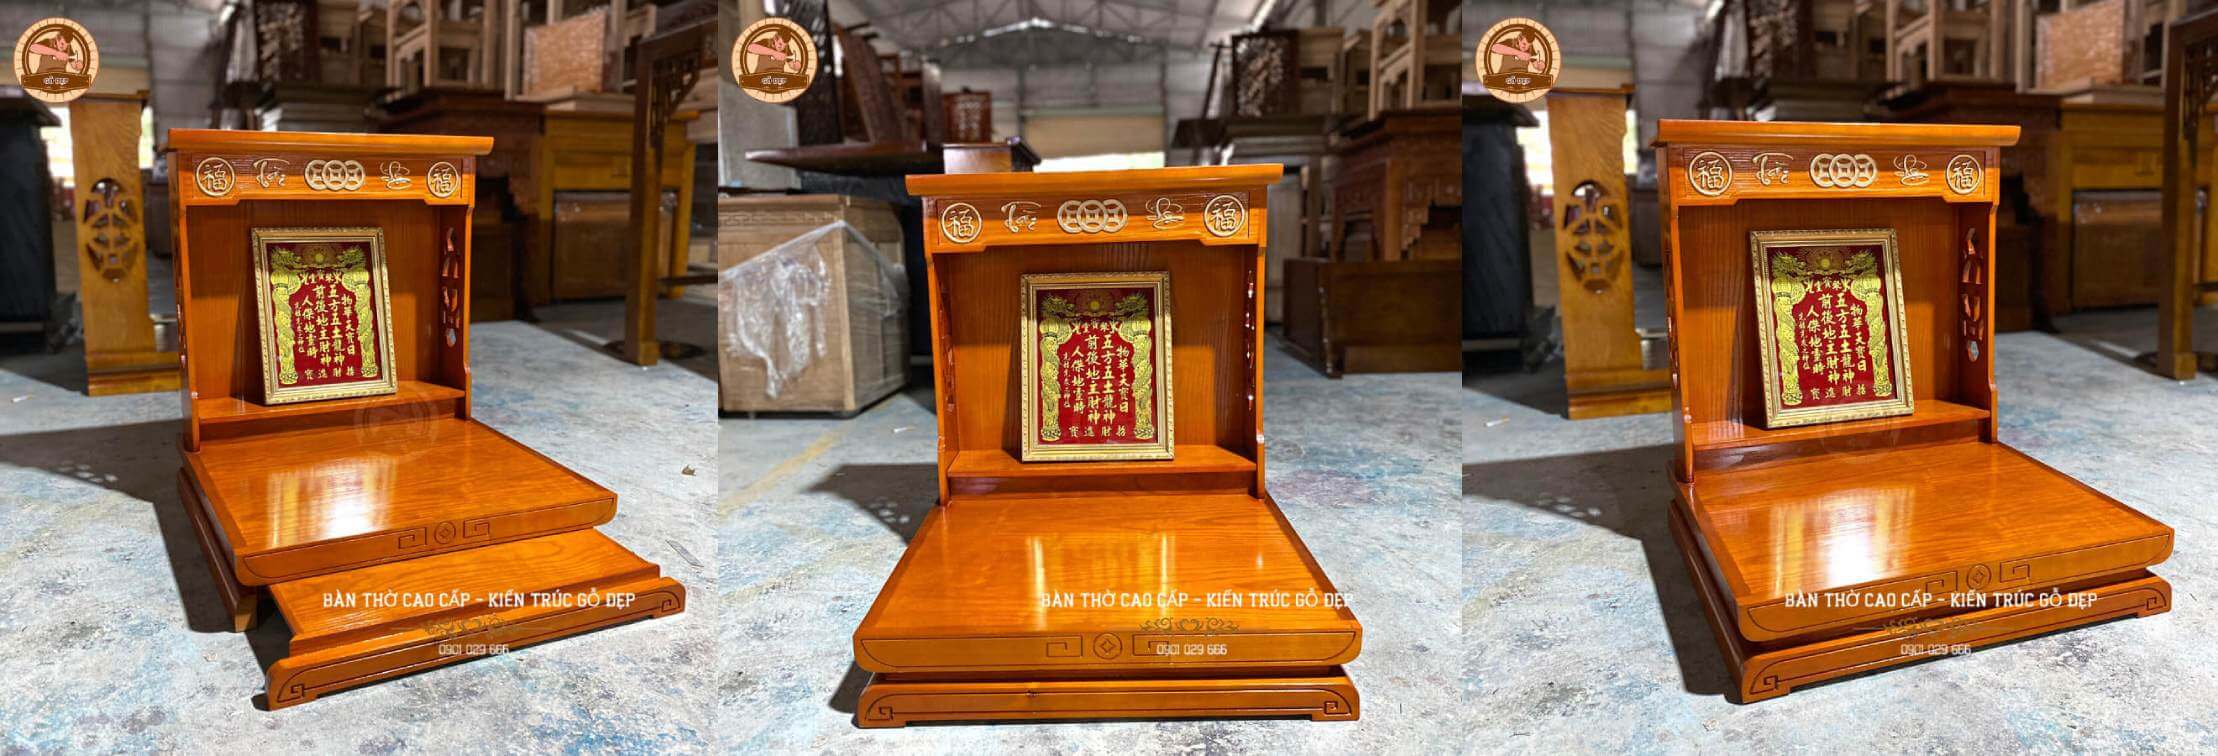 Mẫu bàn thờ thần tài hiện đại được chụp ảnh thực tế tài xưởng sản xuất bàn thờ gỗ đẹp, trước khi giao cho khách hàng ở vũng tàu.